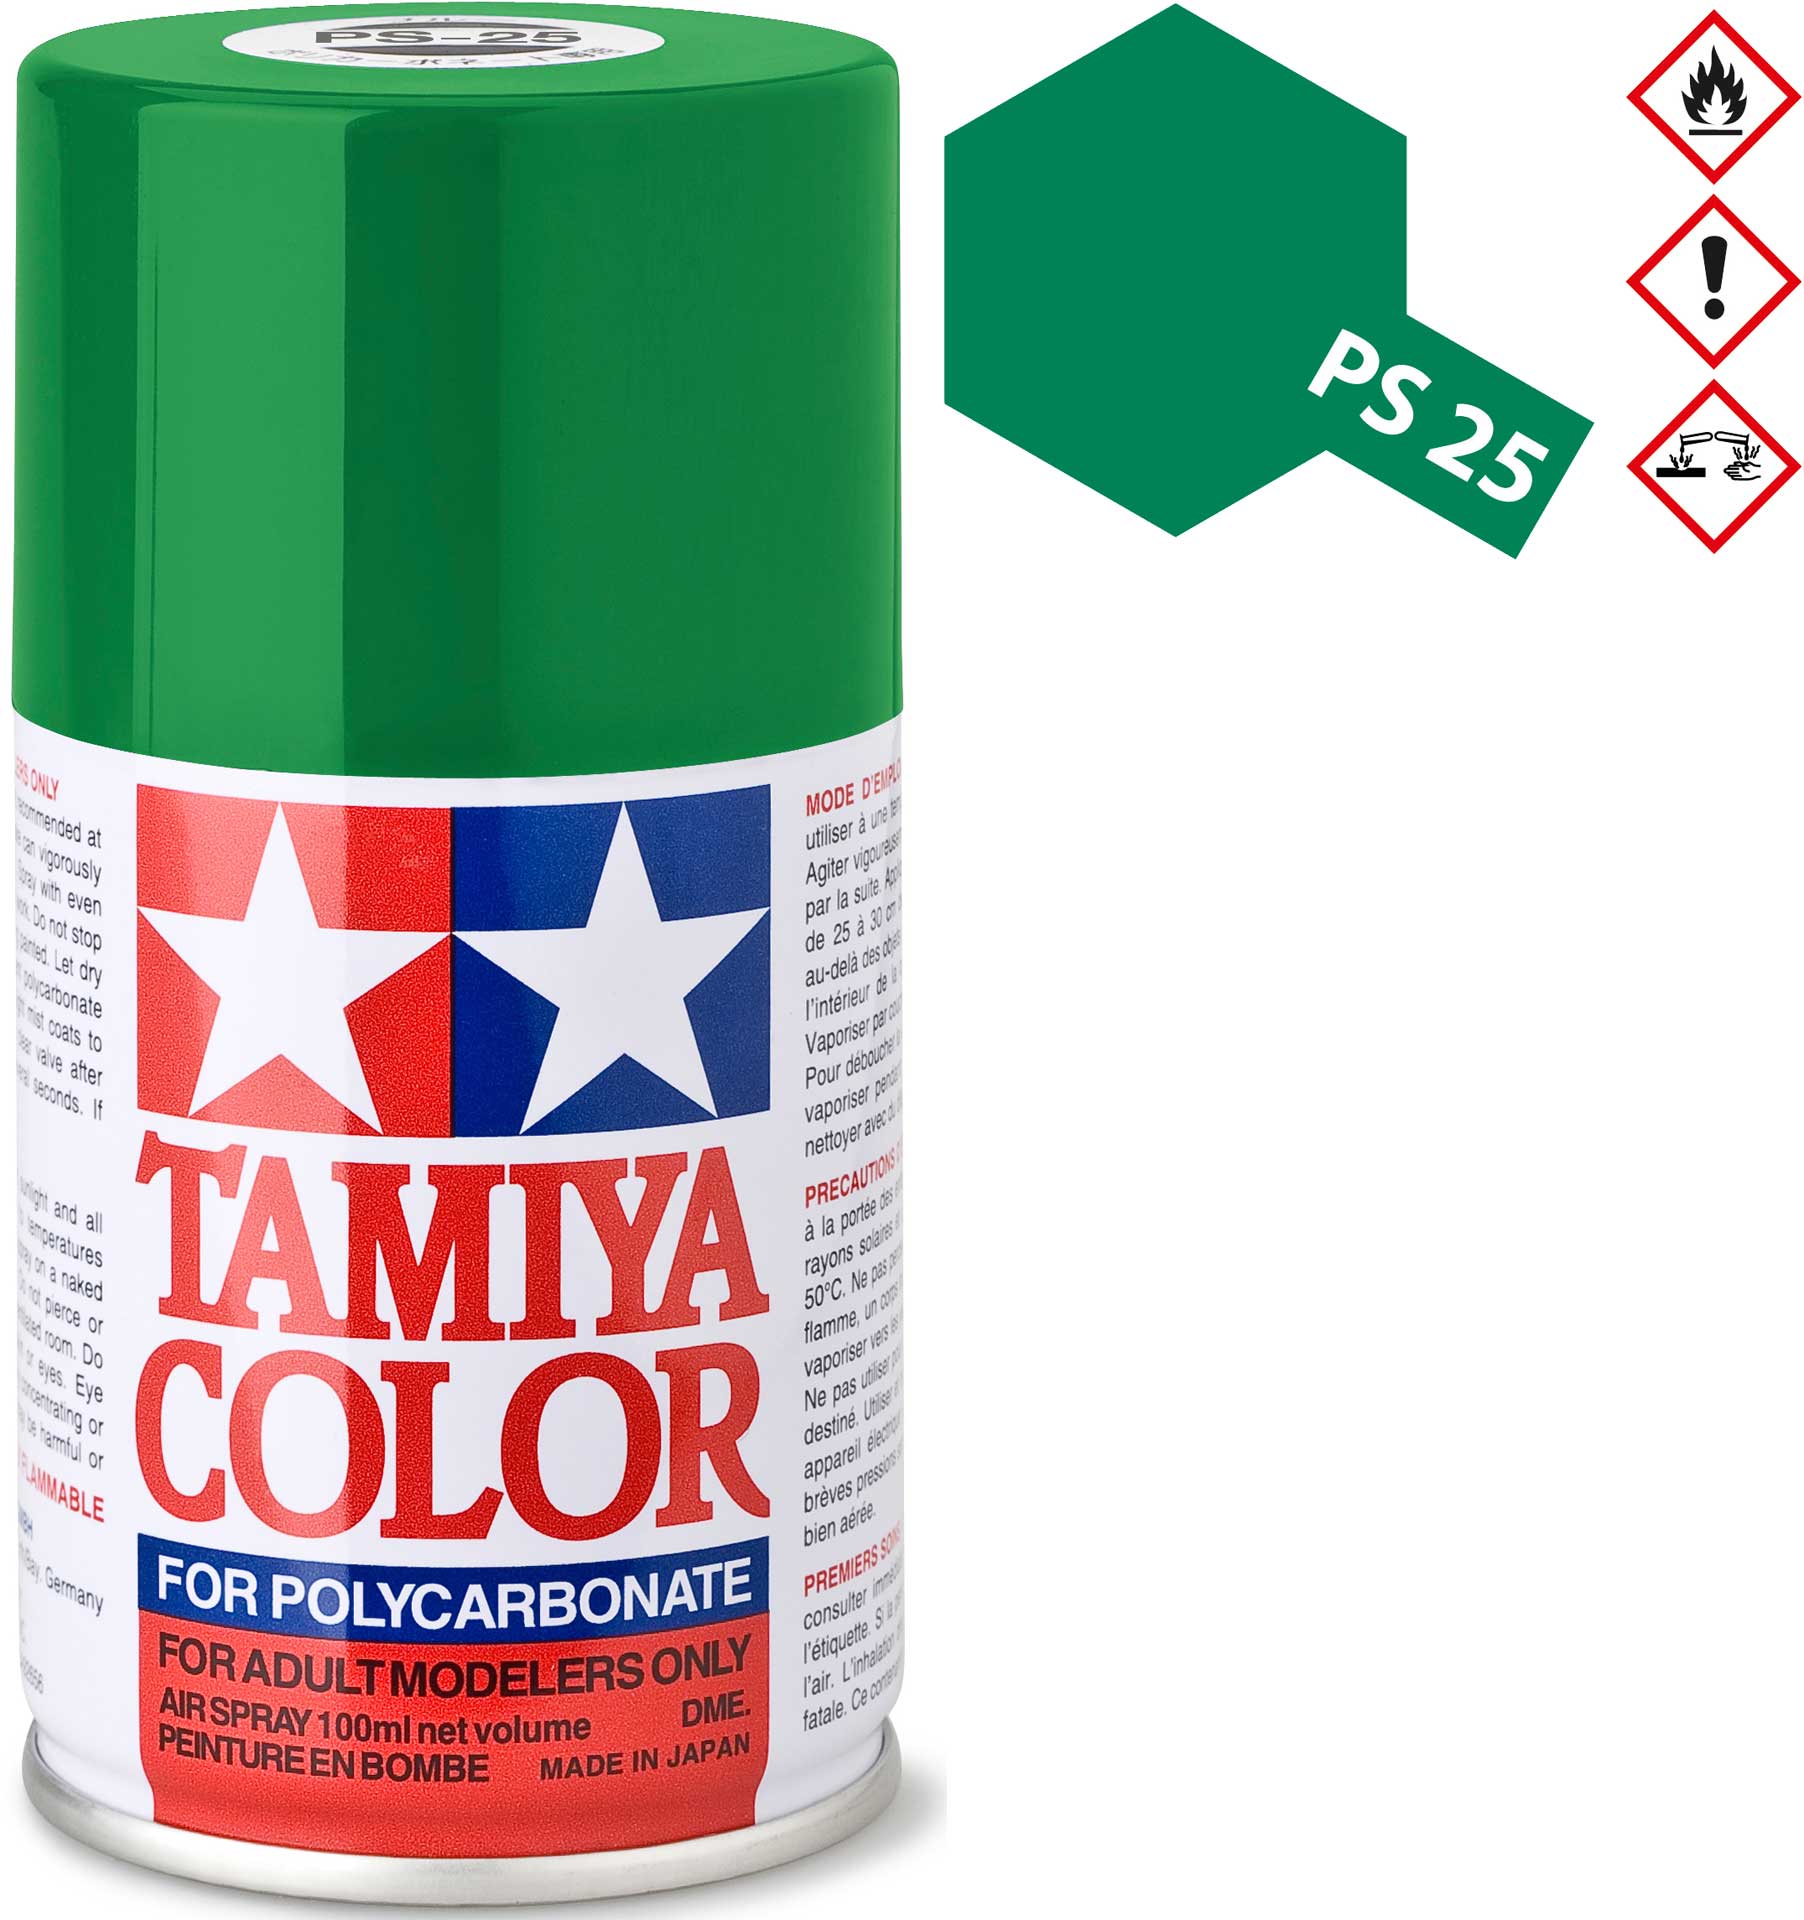 TAMIYA PS-25 Hellgrün Polycarbonat Spray 100ml